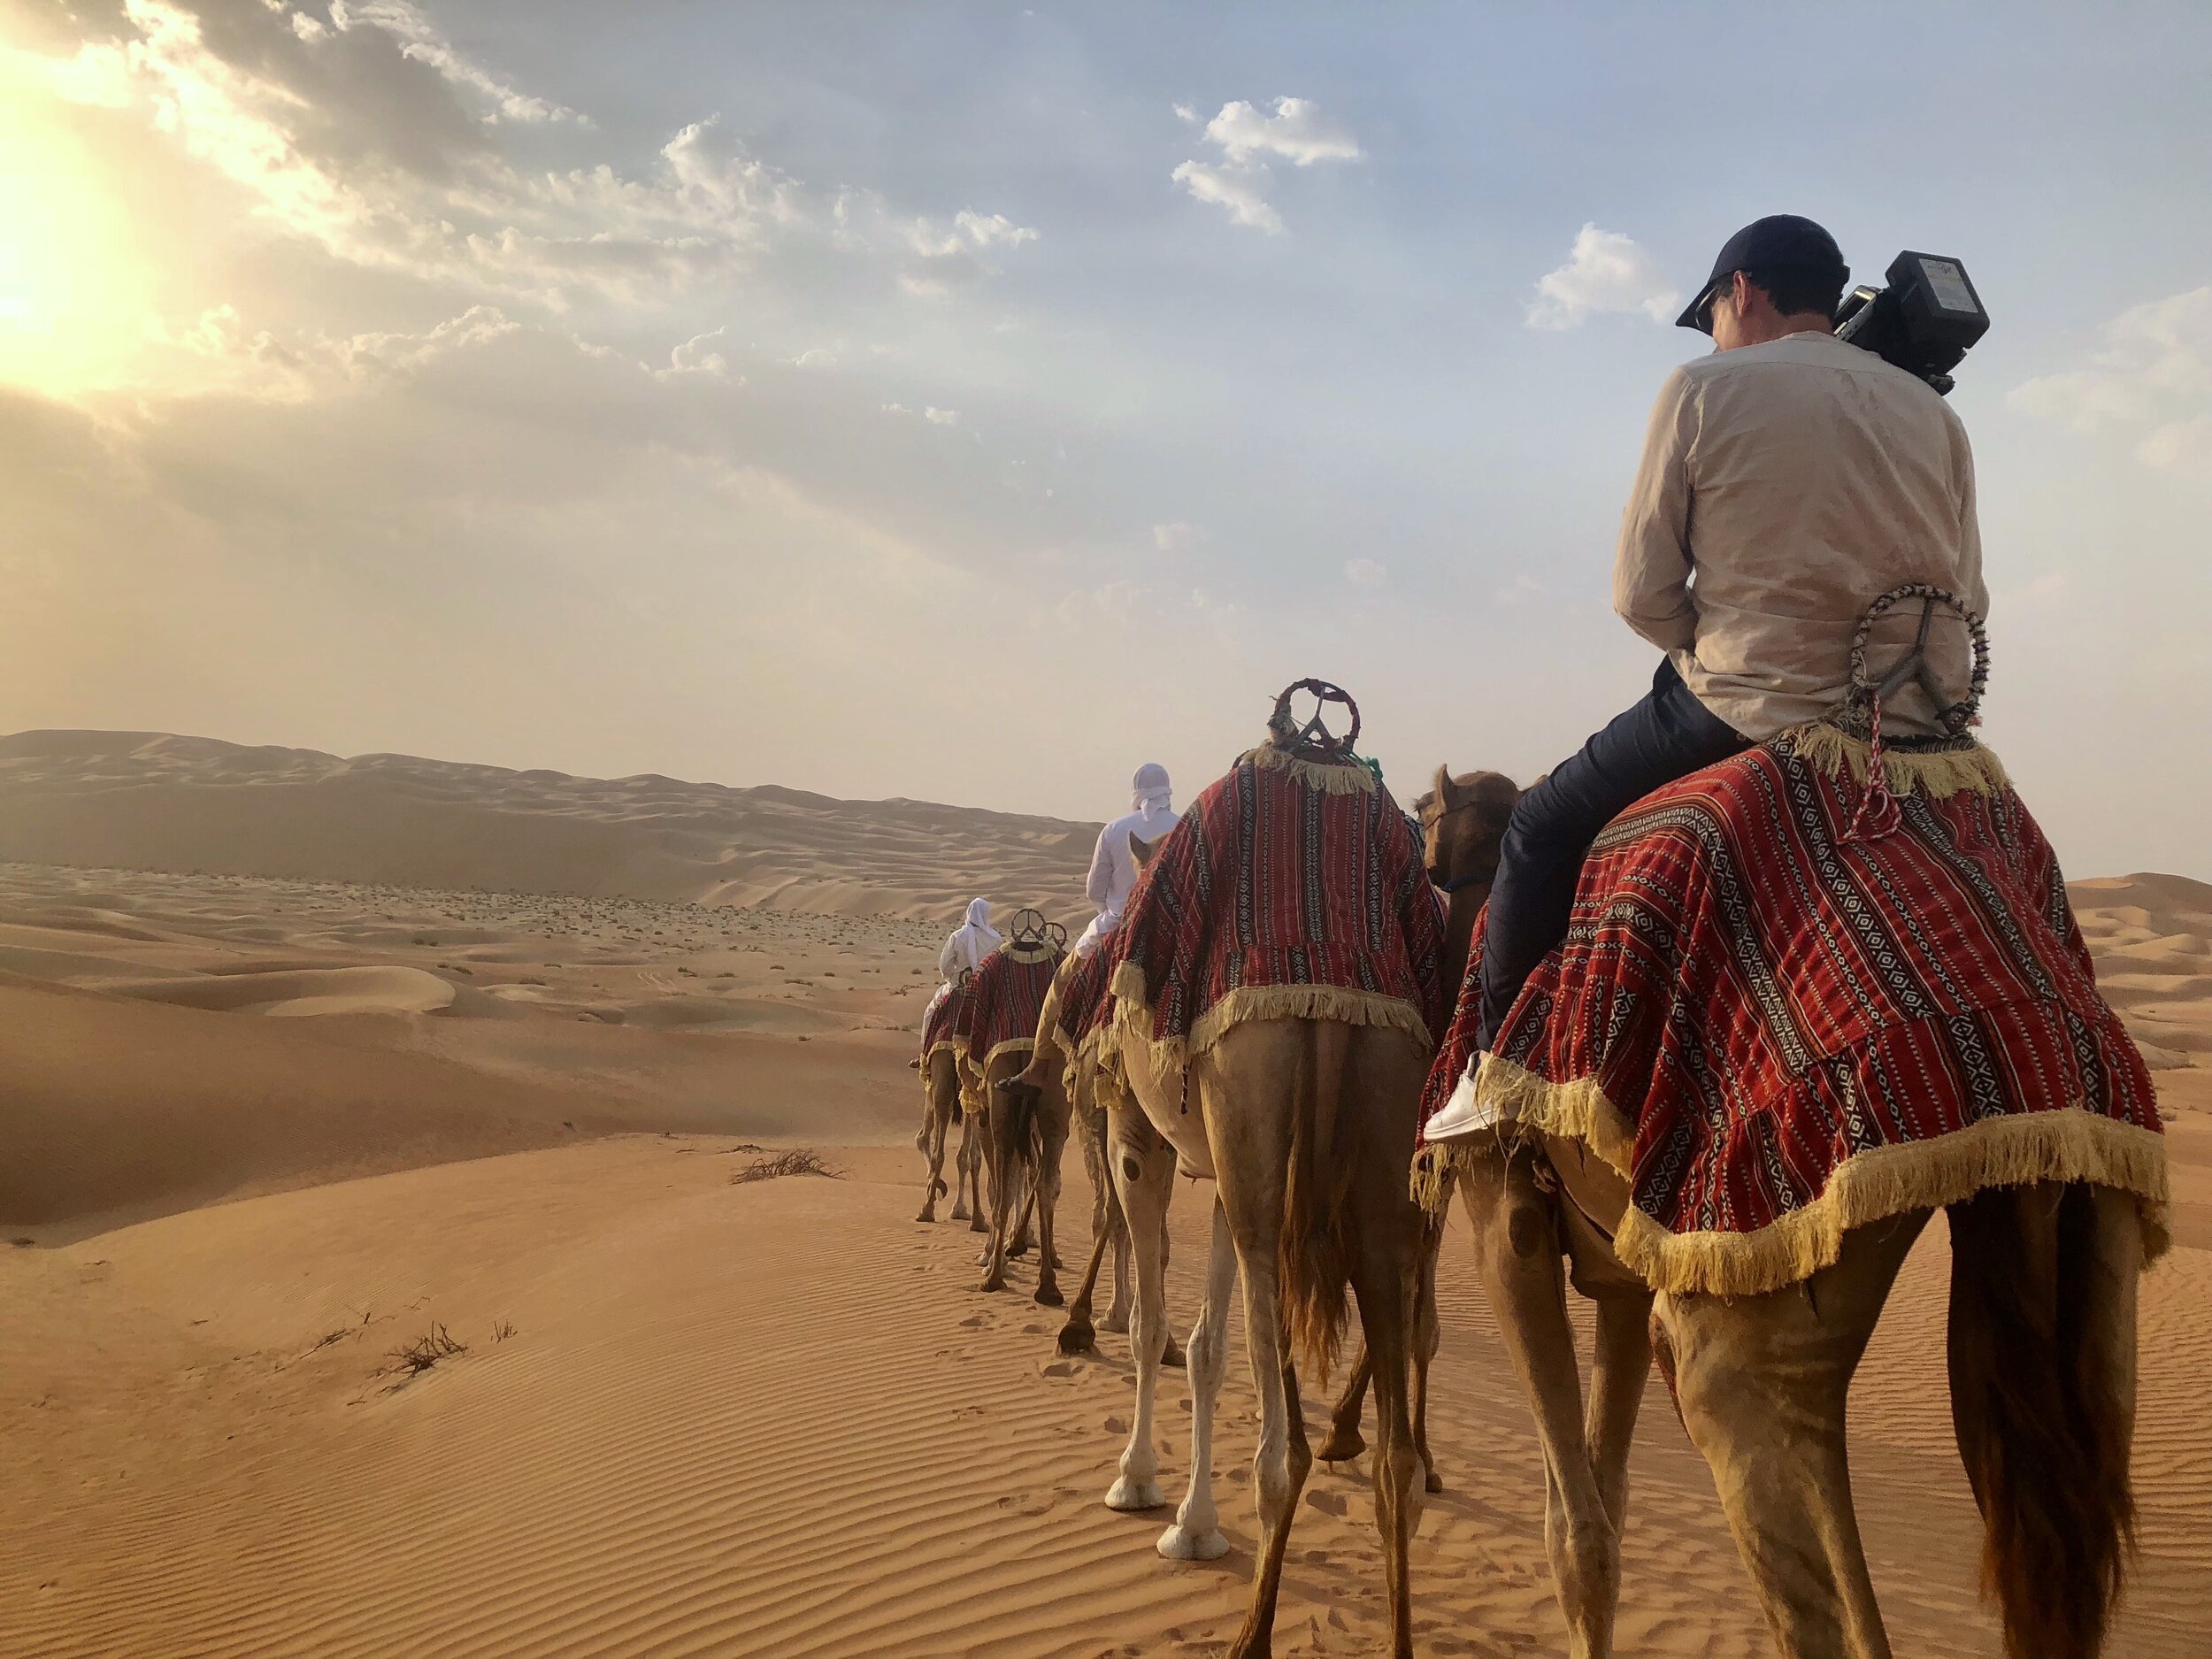 Desert of Arabia